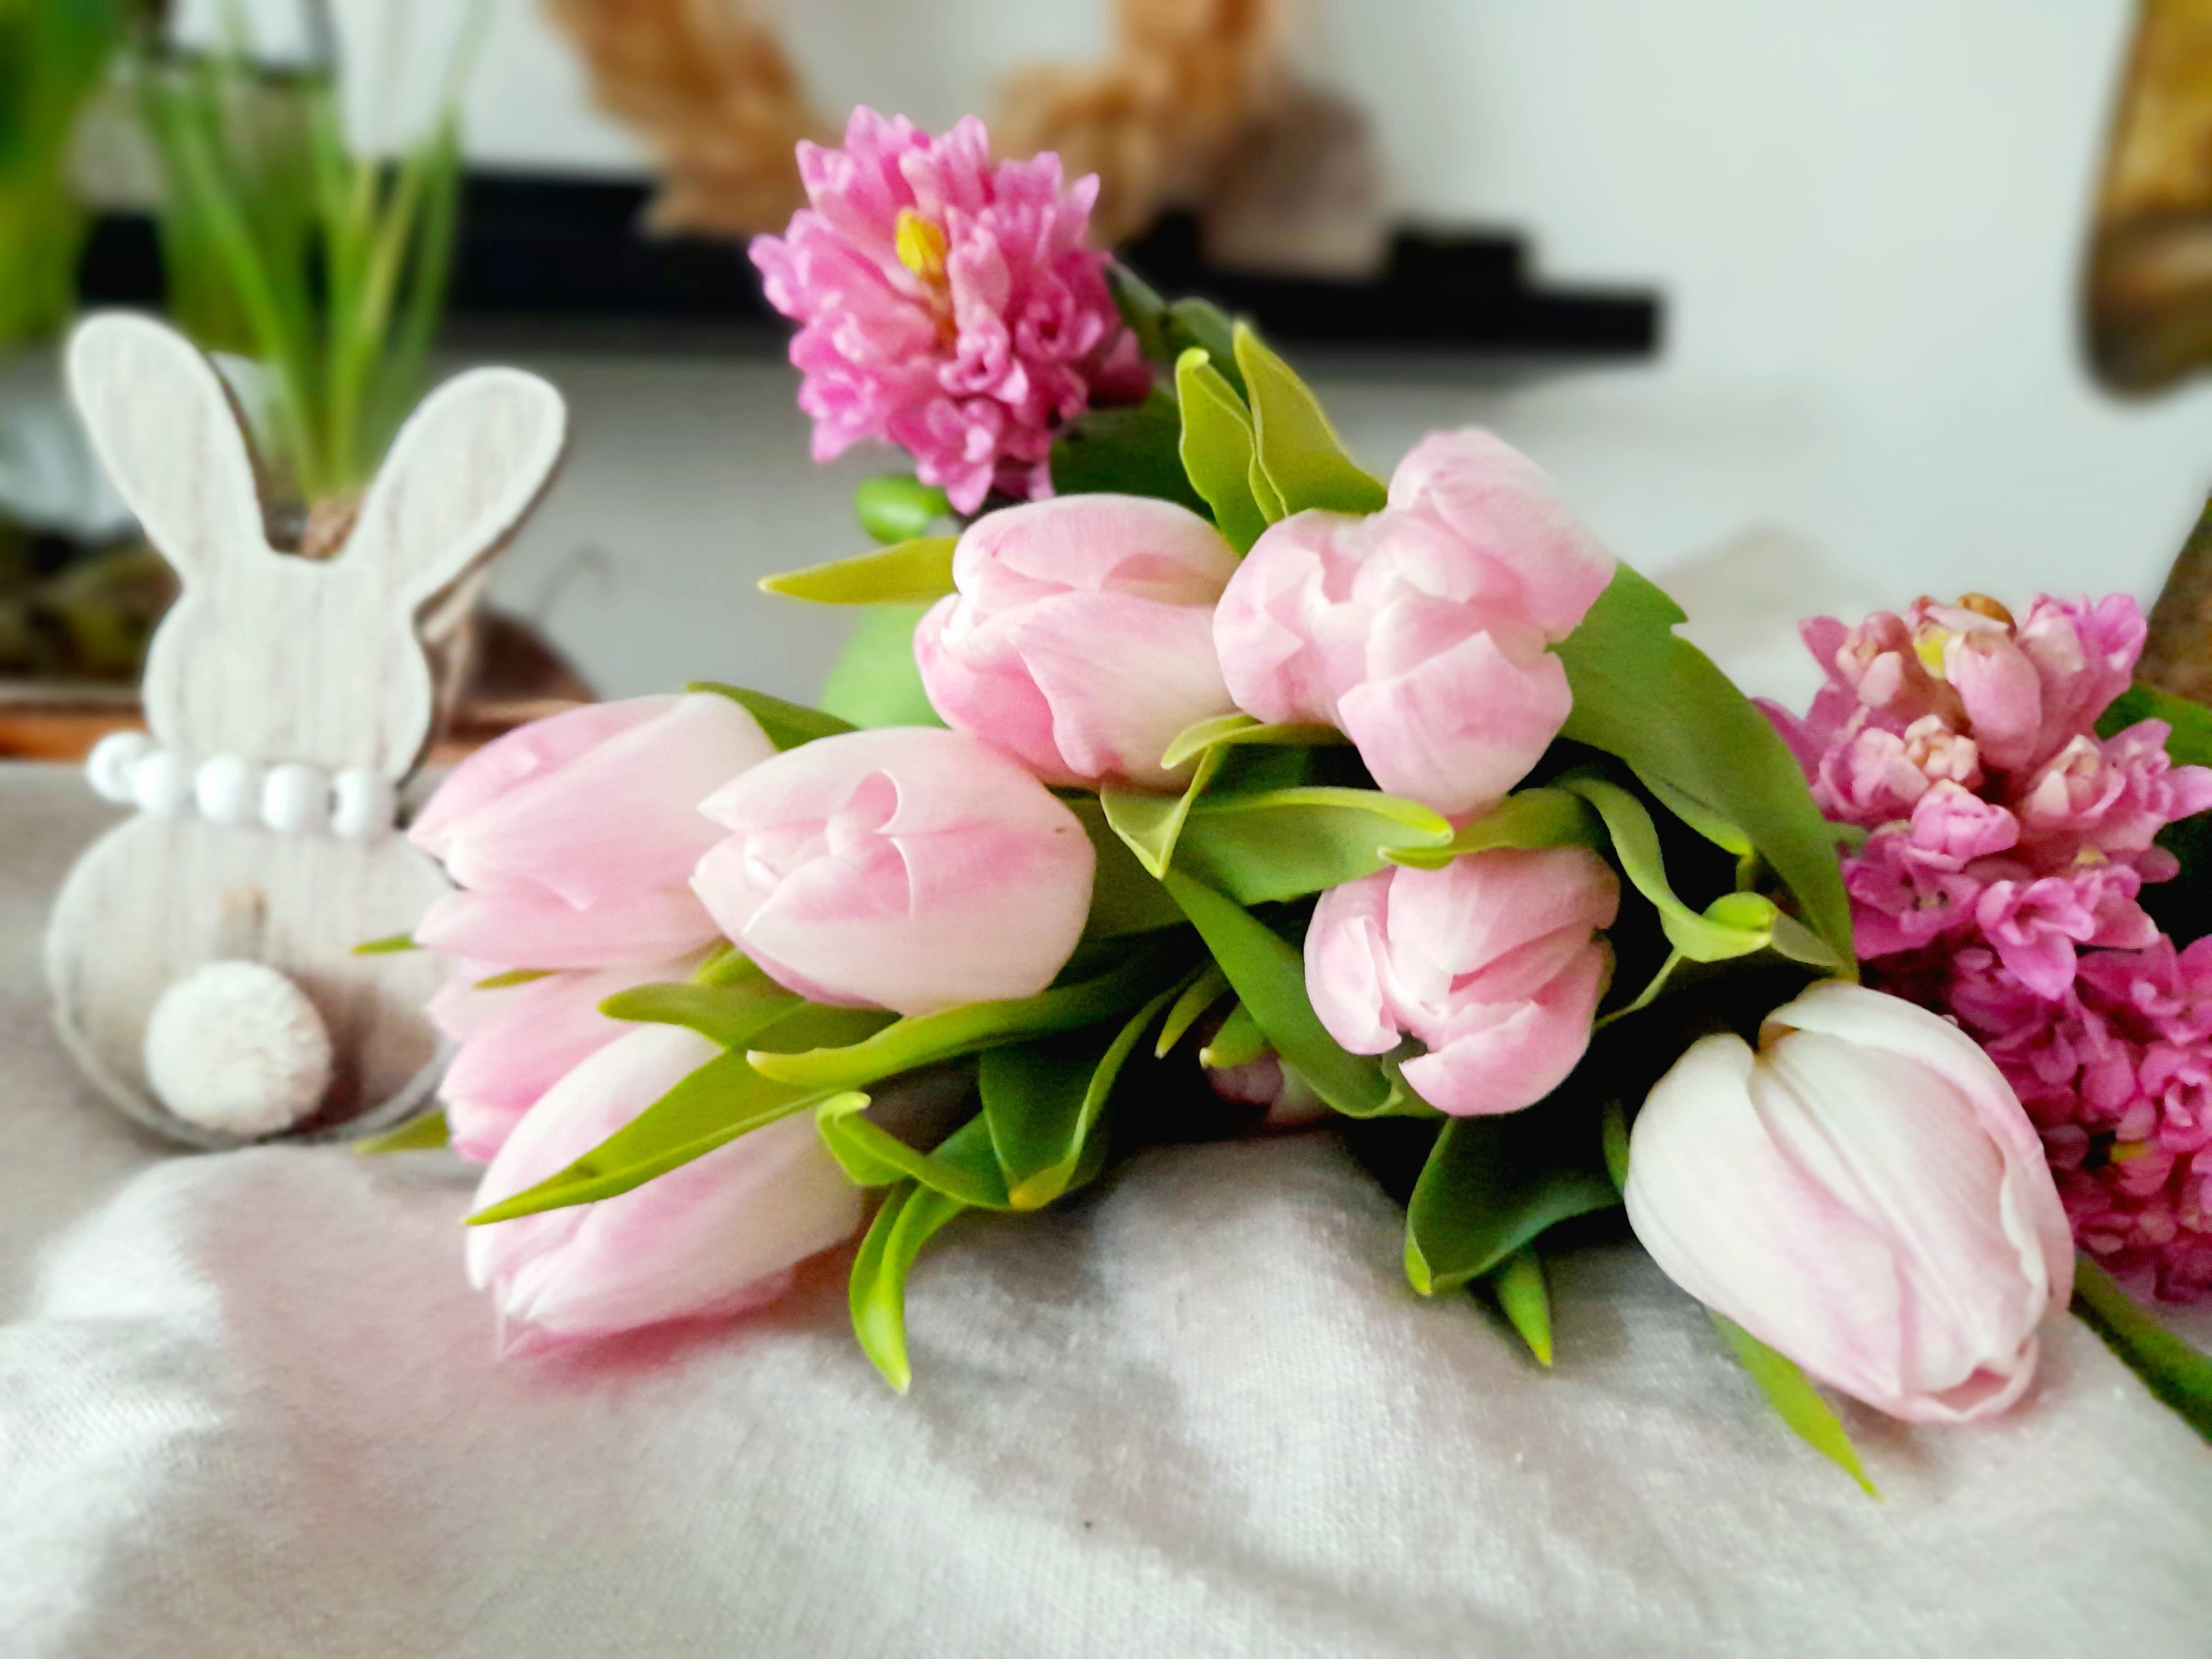 Blumengruss zum Sonntag🌷🌷

#tulpen #hyazinthen #rosa #frühlingsblümchen #osterdeko #hase 
